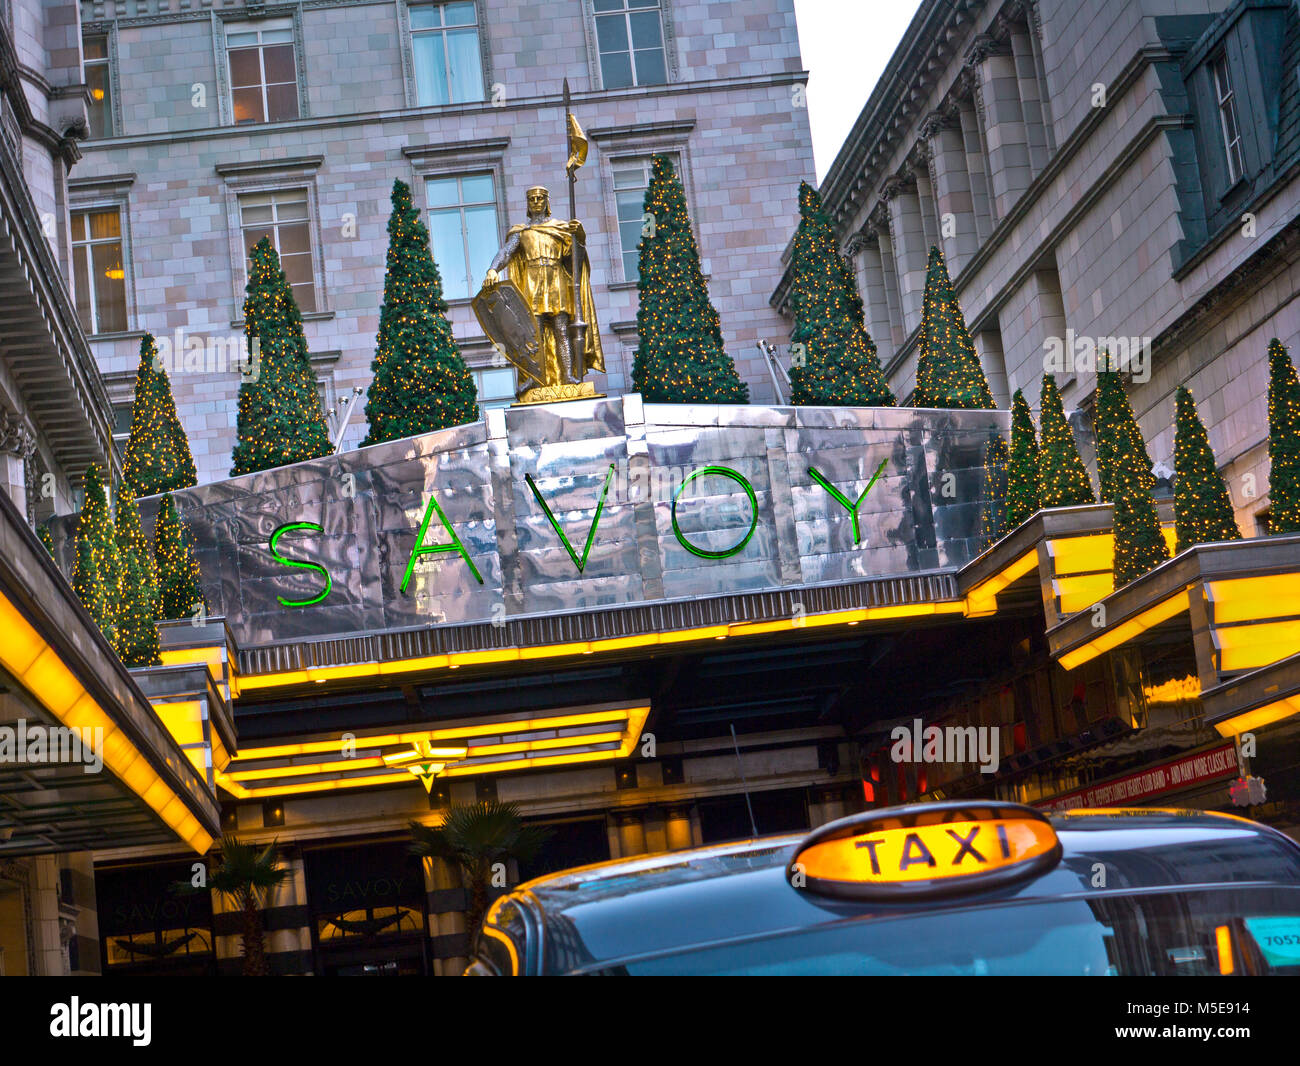 SAVOY HOTEL LONDON TAXI vista esterna di lusso praga Hotel Savoy ingresso al Natale con Londra taxi a noleggio in primo piano il trefolo Londra Foto Stock